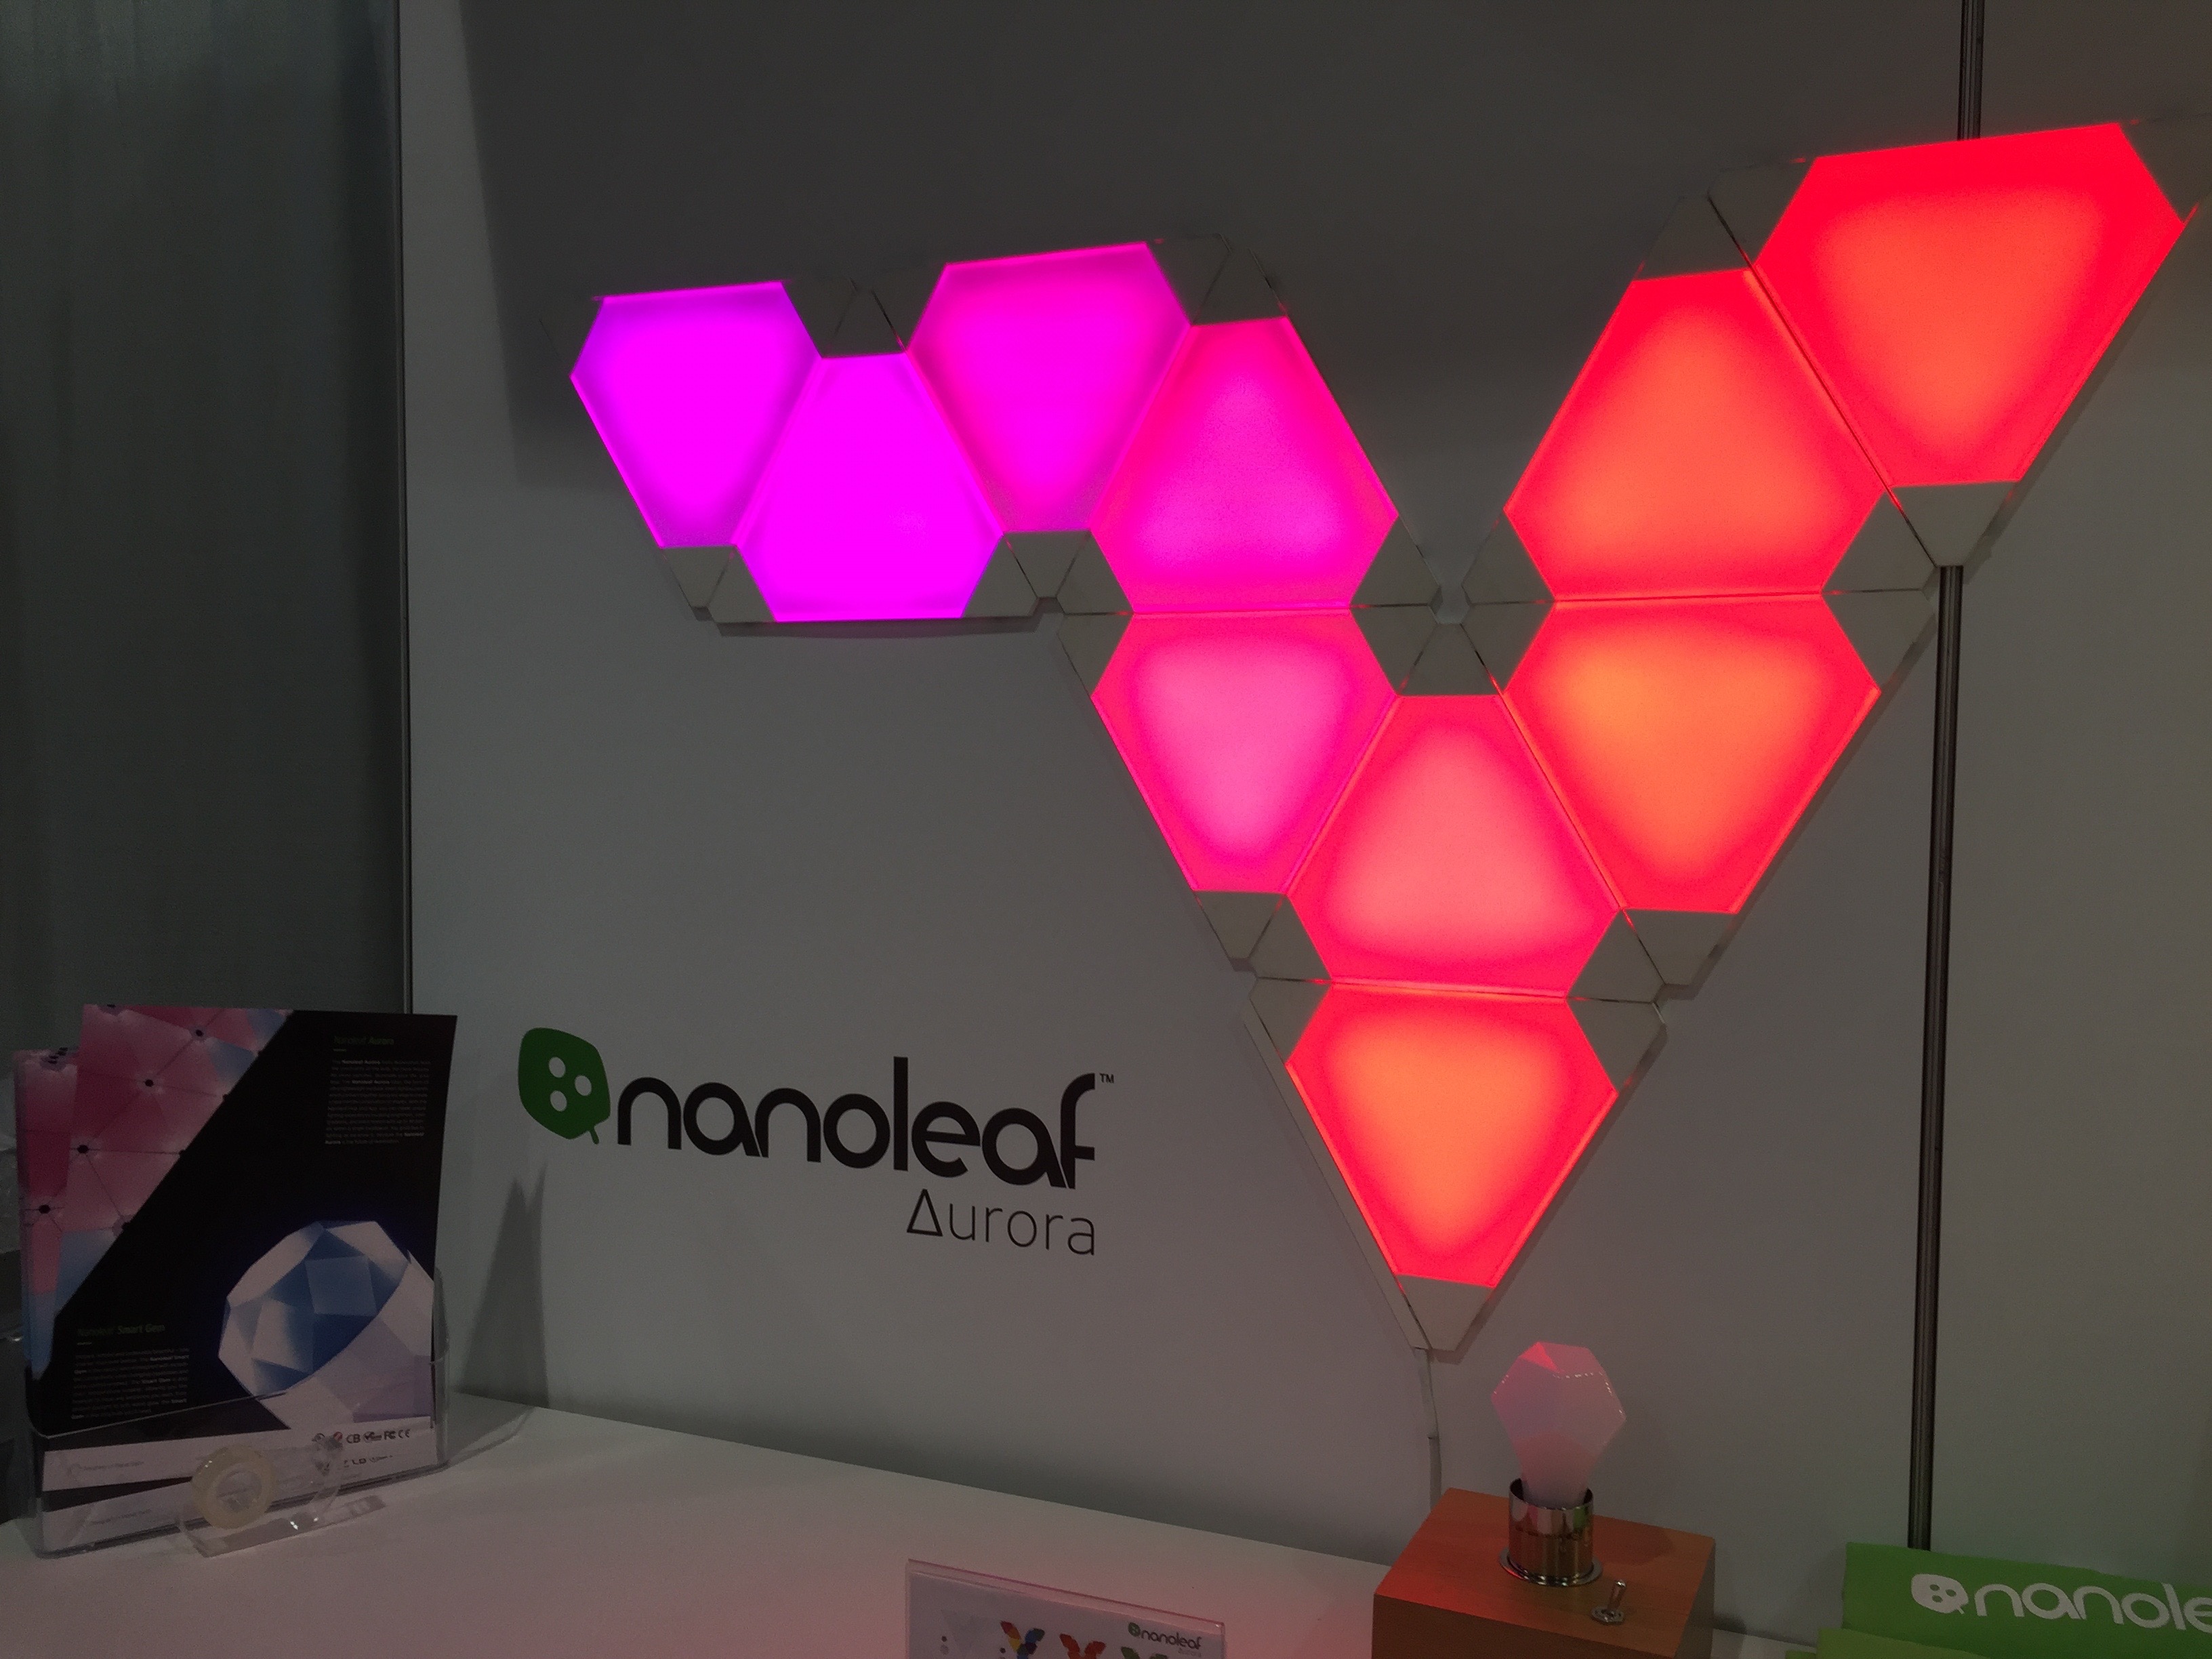 Nanoleaf Aurora on display at CES